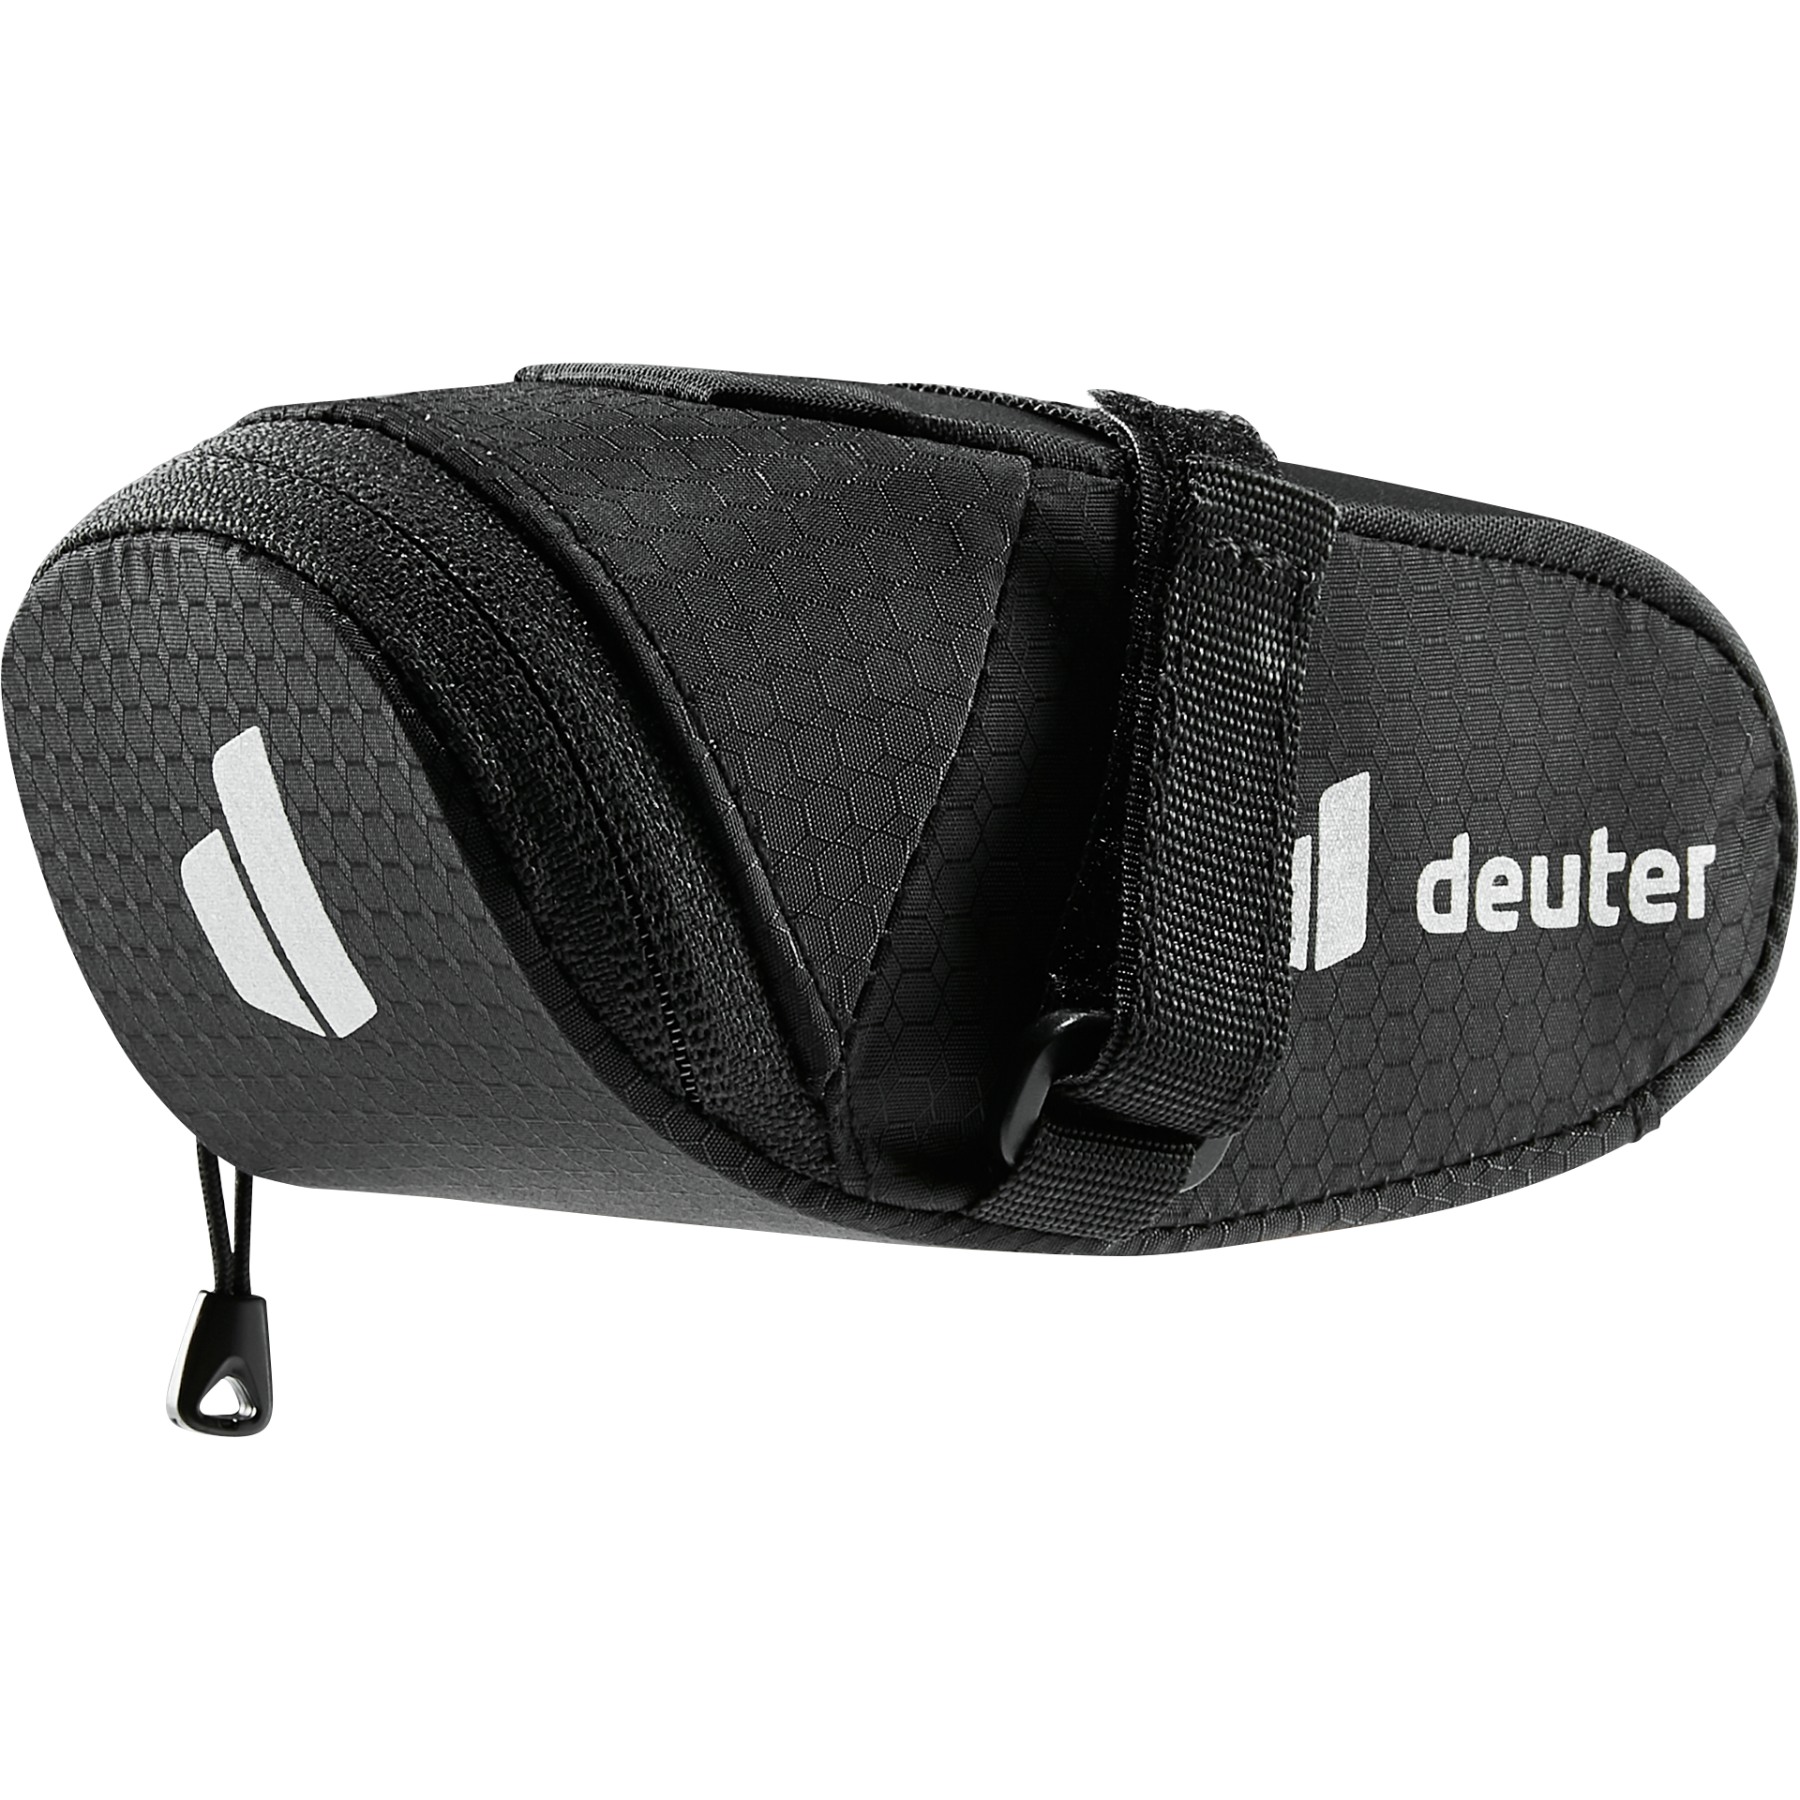 Image of Deuter Bike Bag 0.3L Saddle Bag - black